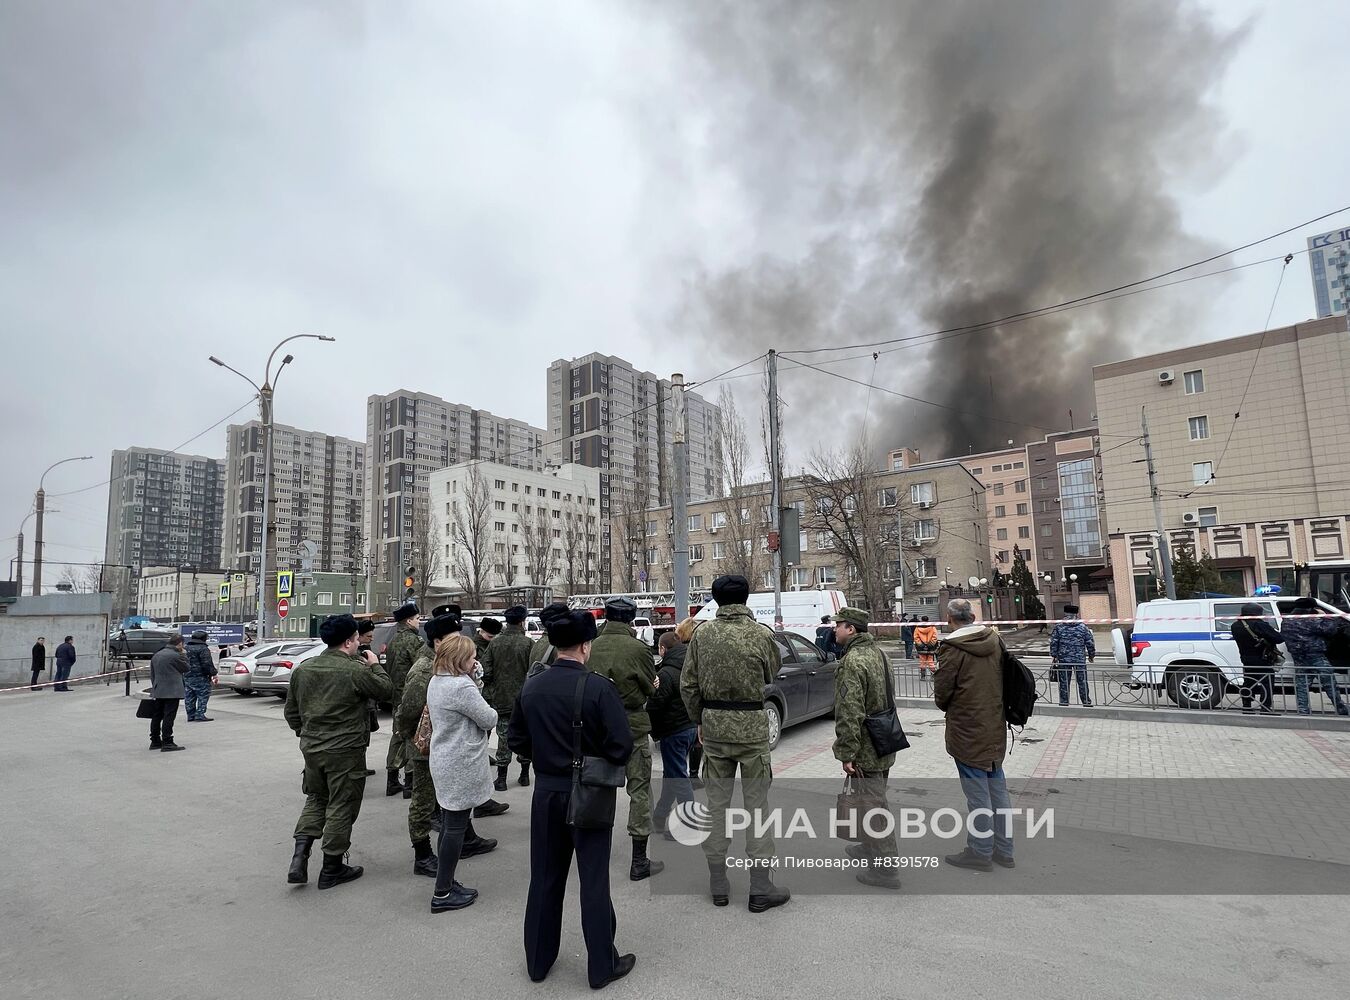 Пожар в здании погранслужбы ФСБ по Ростовской области